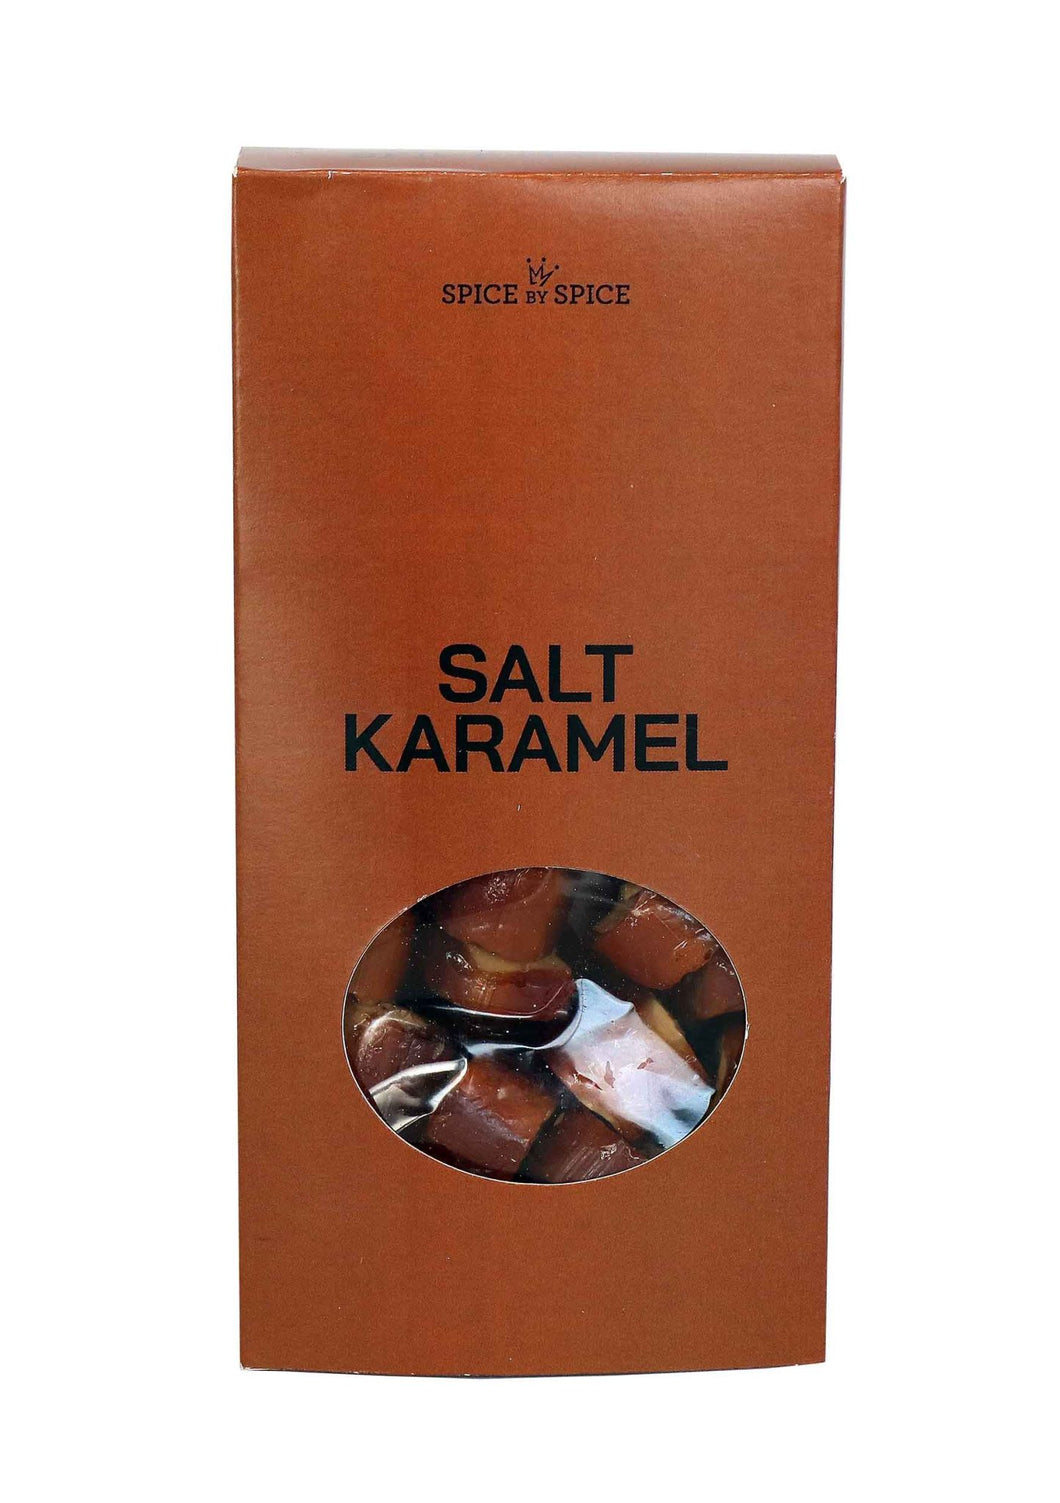 Spice by Spice - Salt karamel bolcher